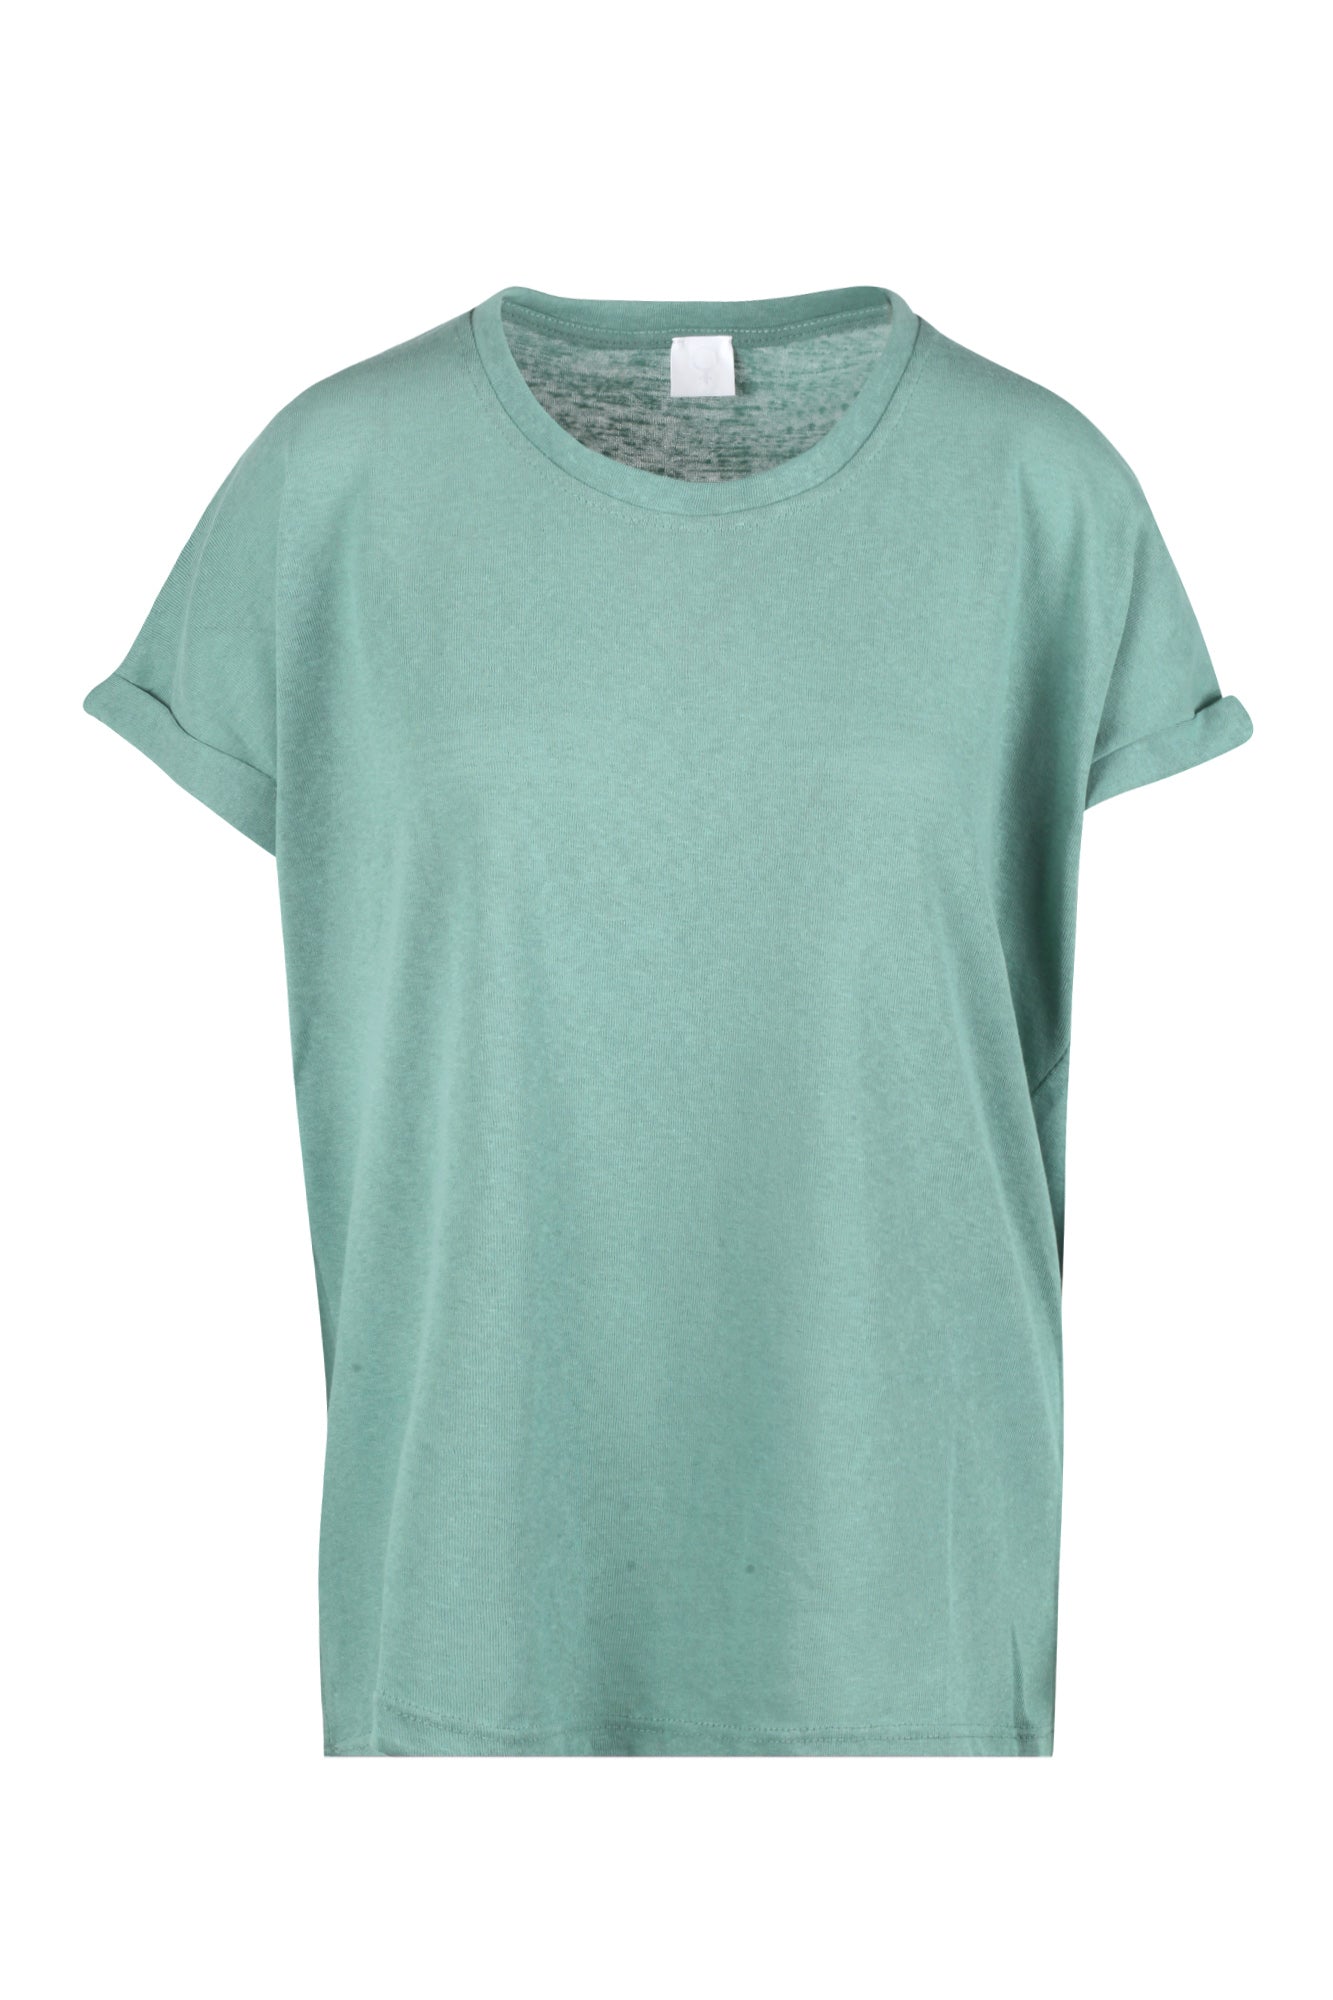 La Femme Blanche - T-shirt - 431585 - Verde